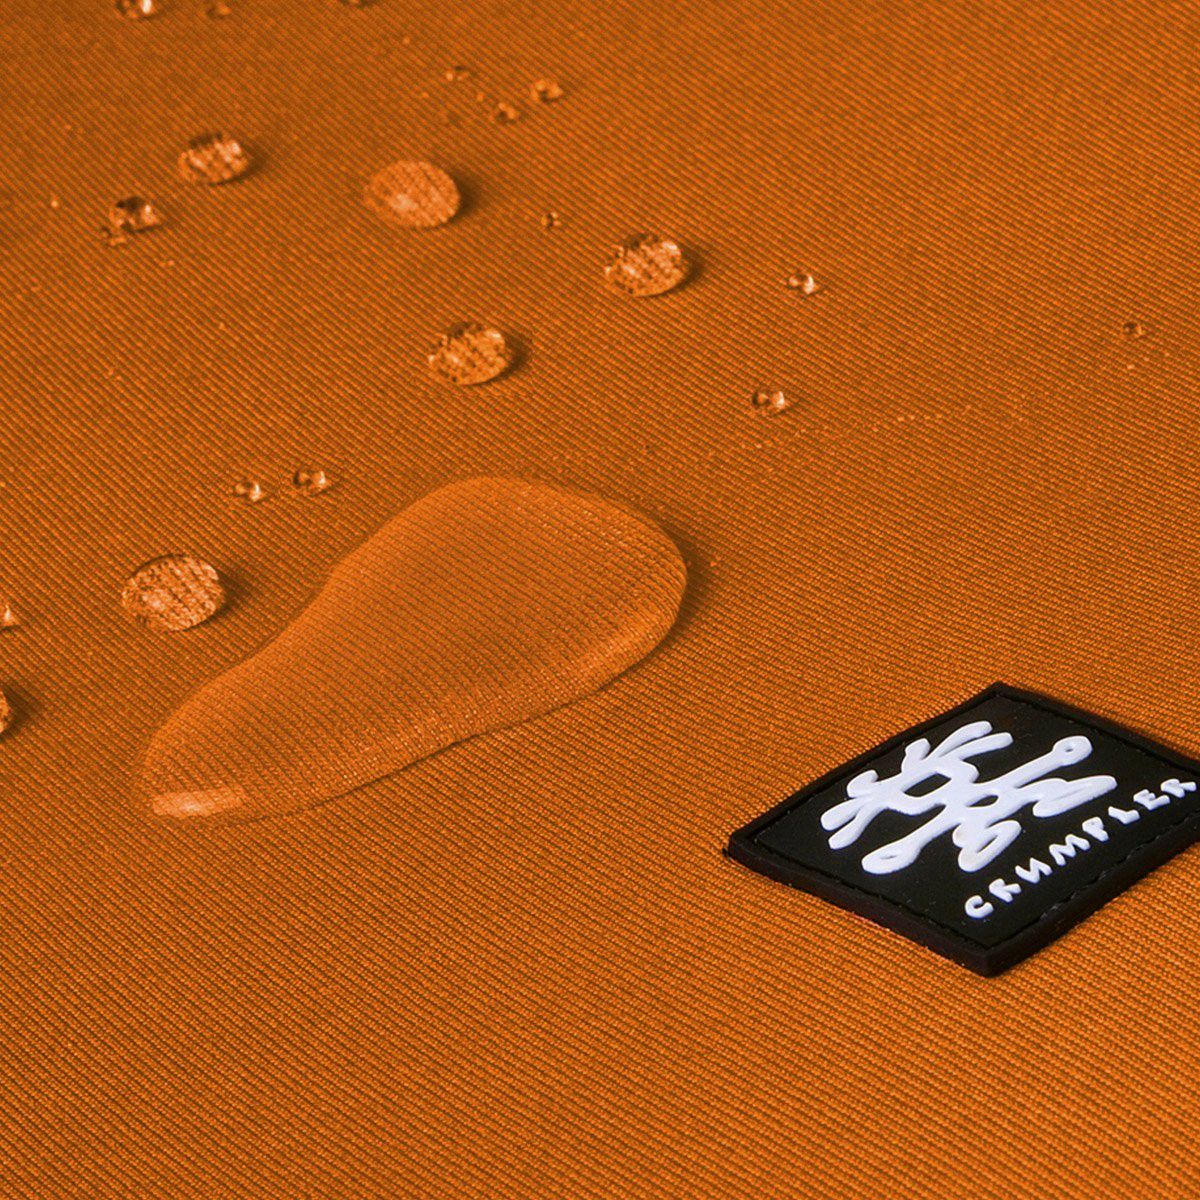 Crumpler Base Layer Camera Cube S burned orange anthracite (BLCC-S-003) žarko narančasta antracit torba za fotoaparat